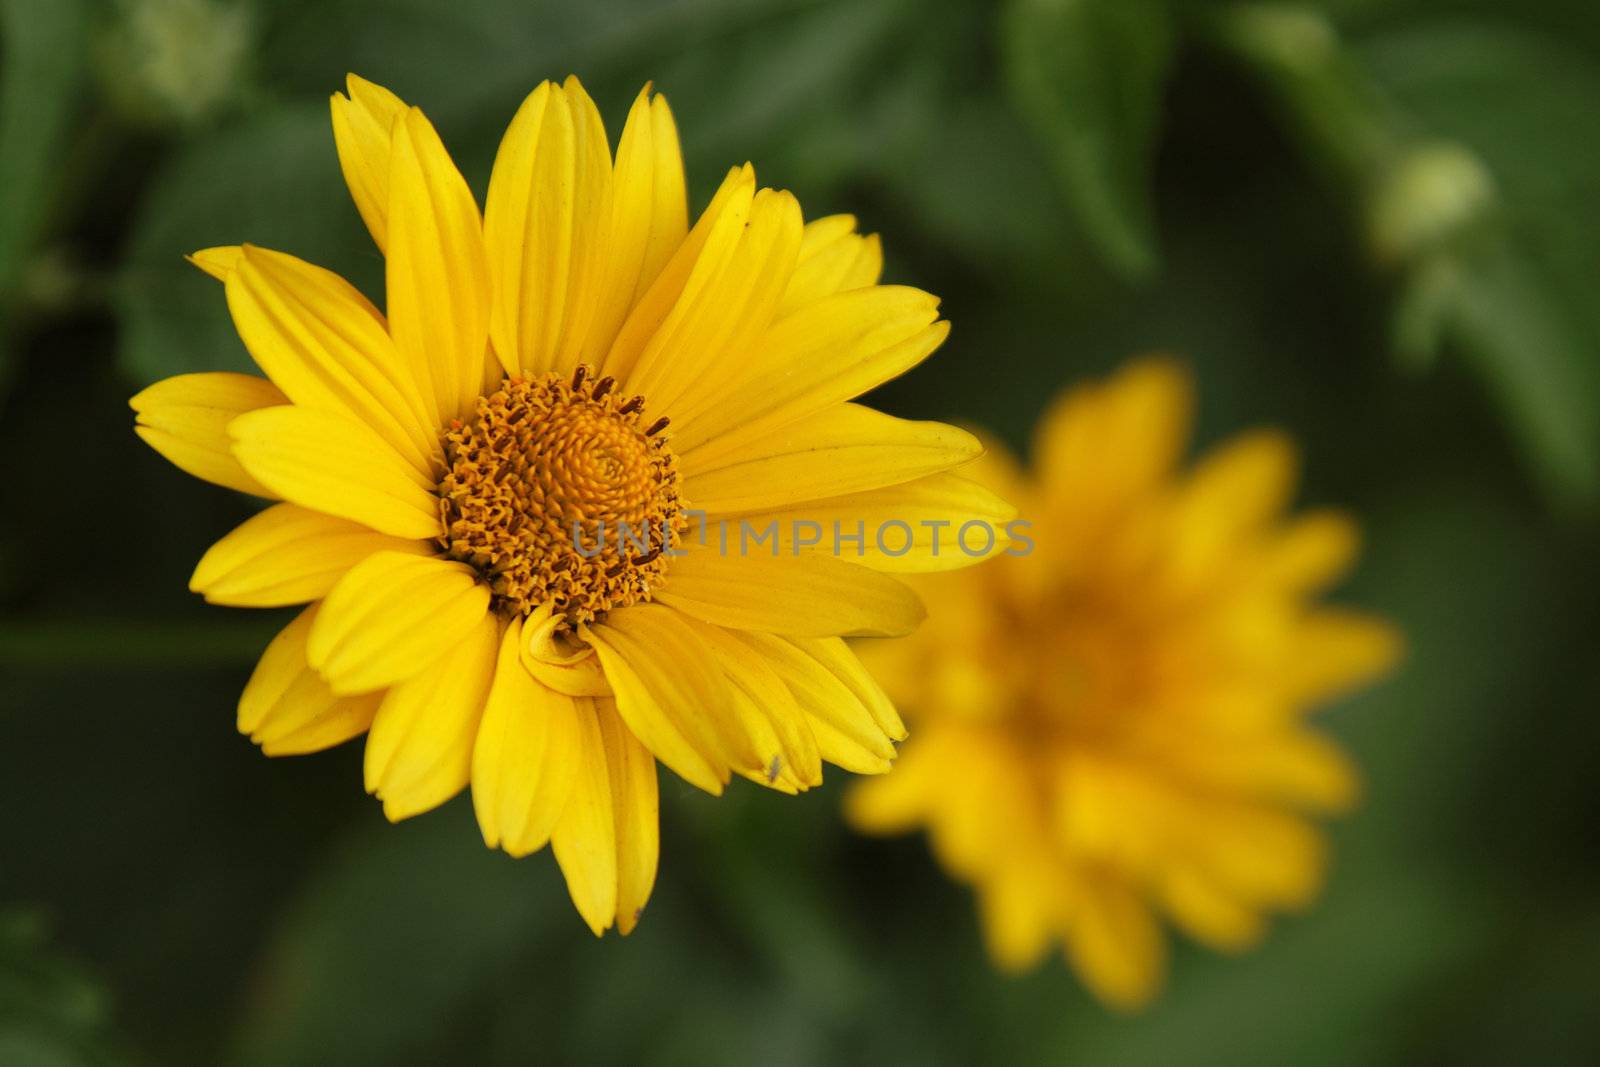 Yellow arnica in the garden, closeup photo